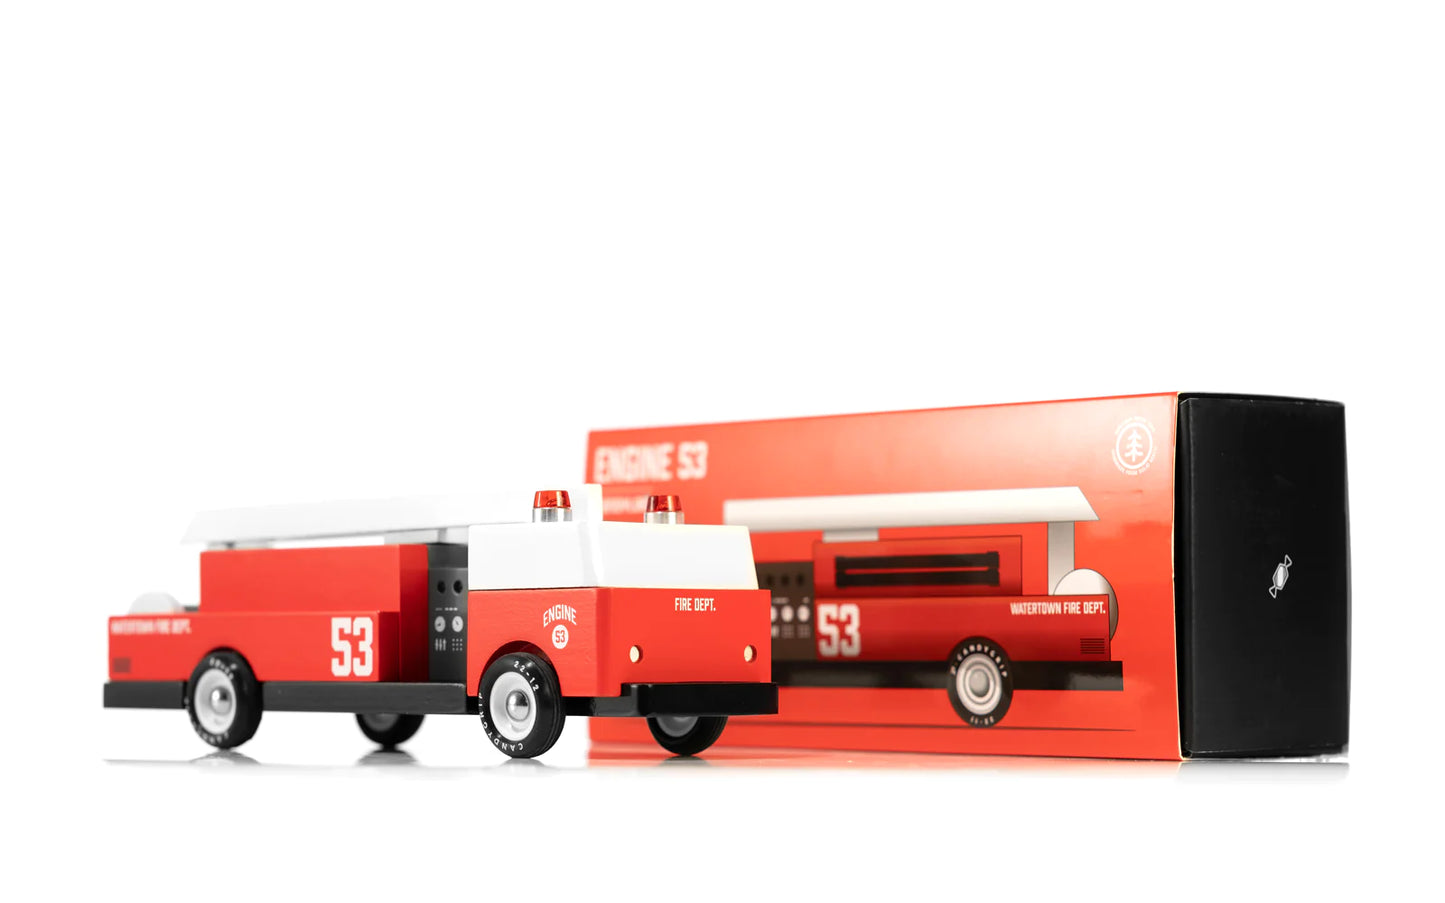 Candylab Toys Engine 53 - Modern Vintage Fire Truck